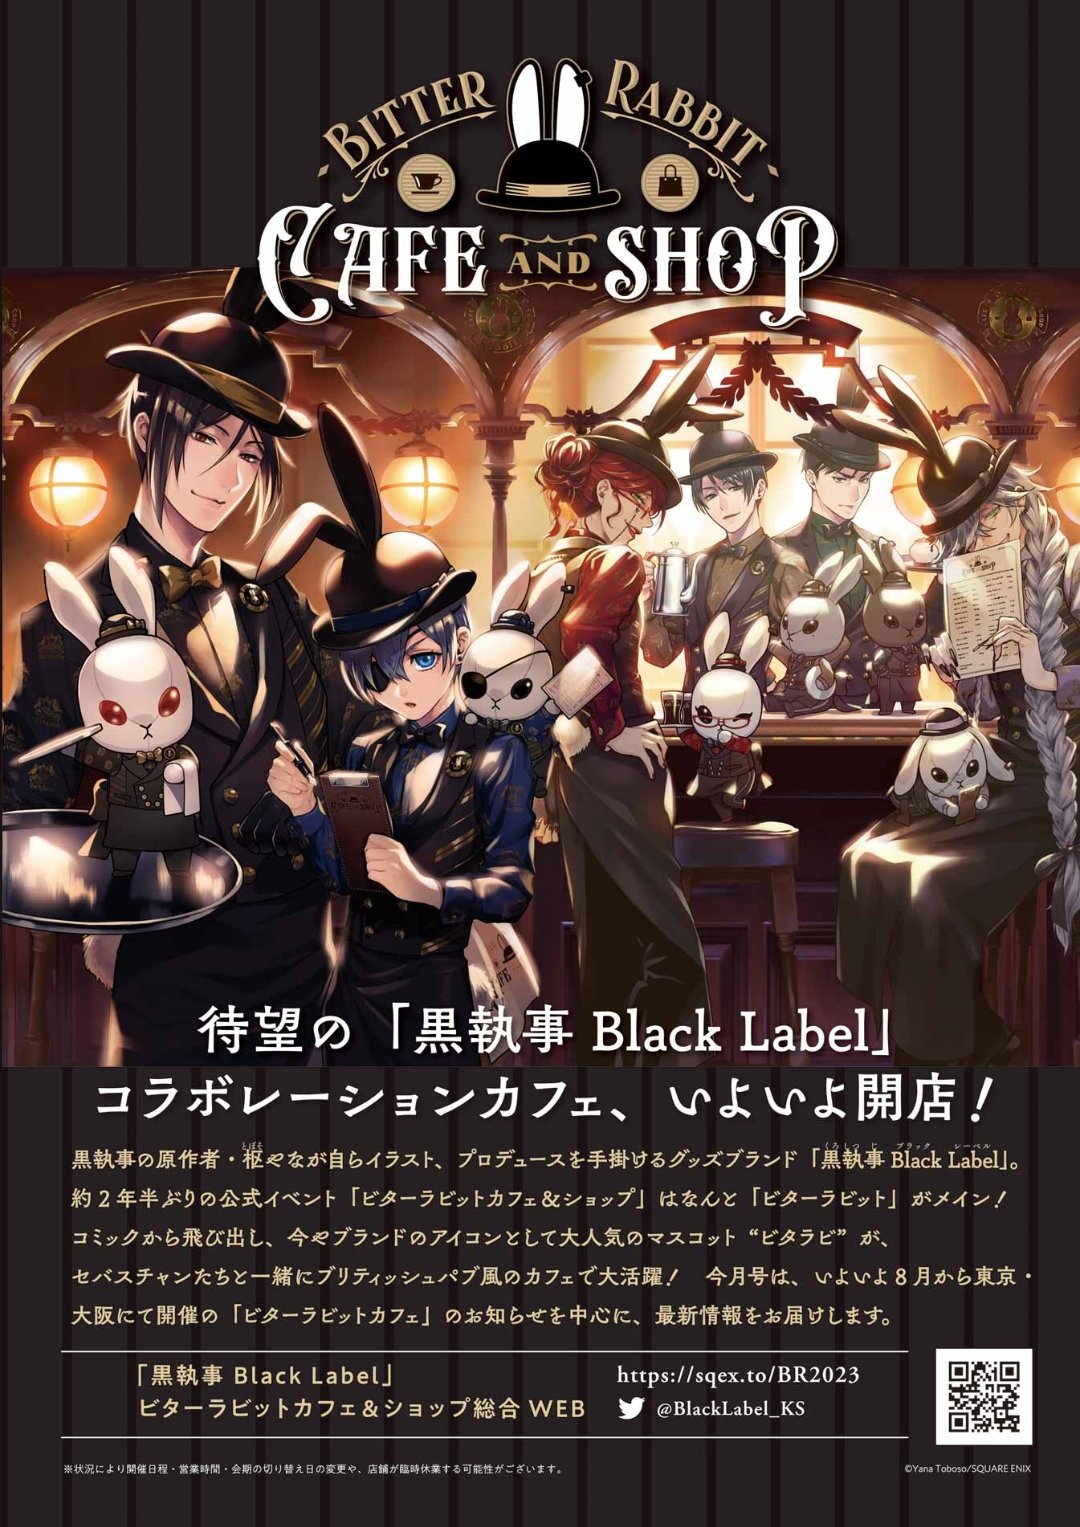 Black Butler Launches Bitter Rabbit Café and Shop - Crunchyroll News